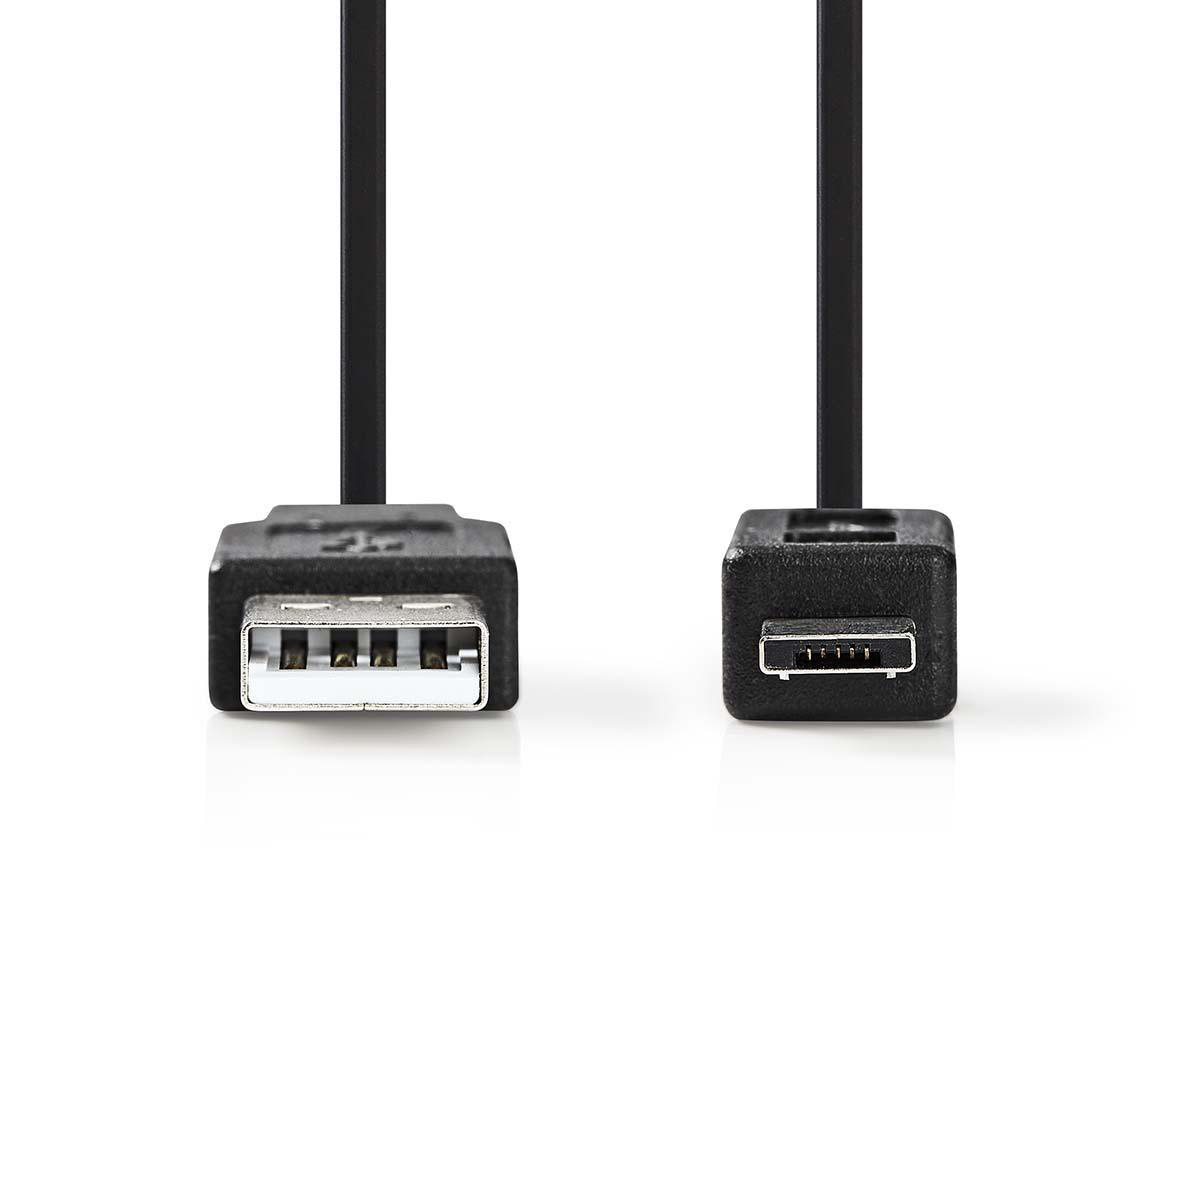 NEDIS CCGP60400BK20 USB-Kabel